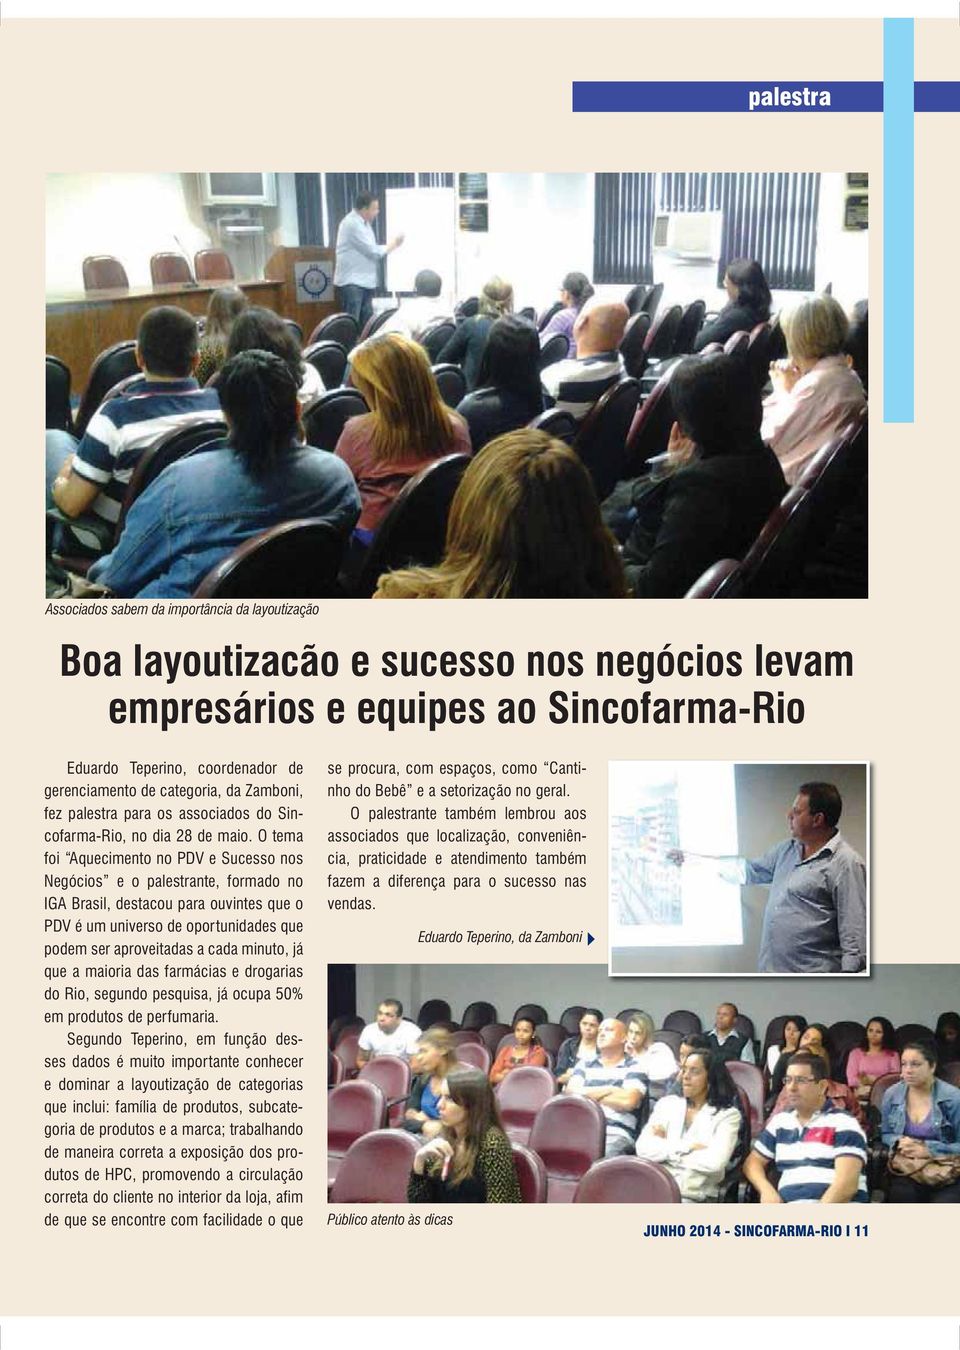 O tema foi Aquecimento no PDV e Sucesso nos Negócios e o palestrante, formado no IGA Brasil, destacou para ouvintes que o PDV é um universo de oportunidades que podem ser aproveitadas a cada minuto,